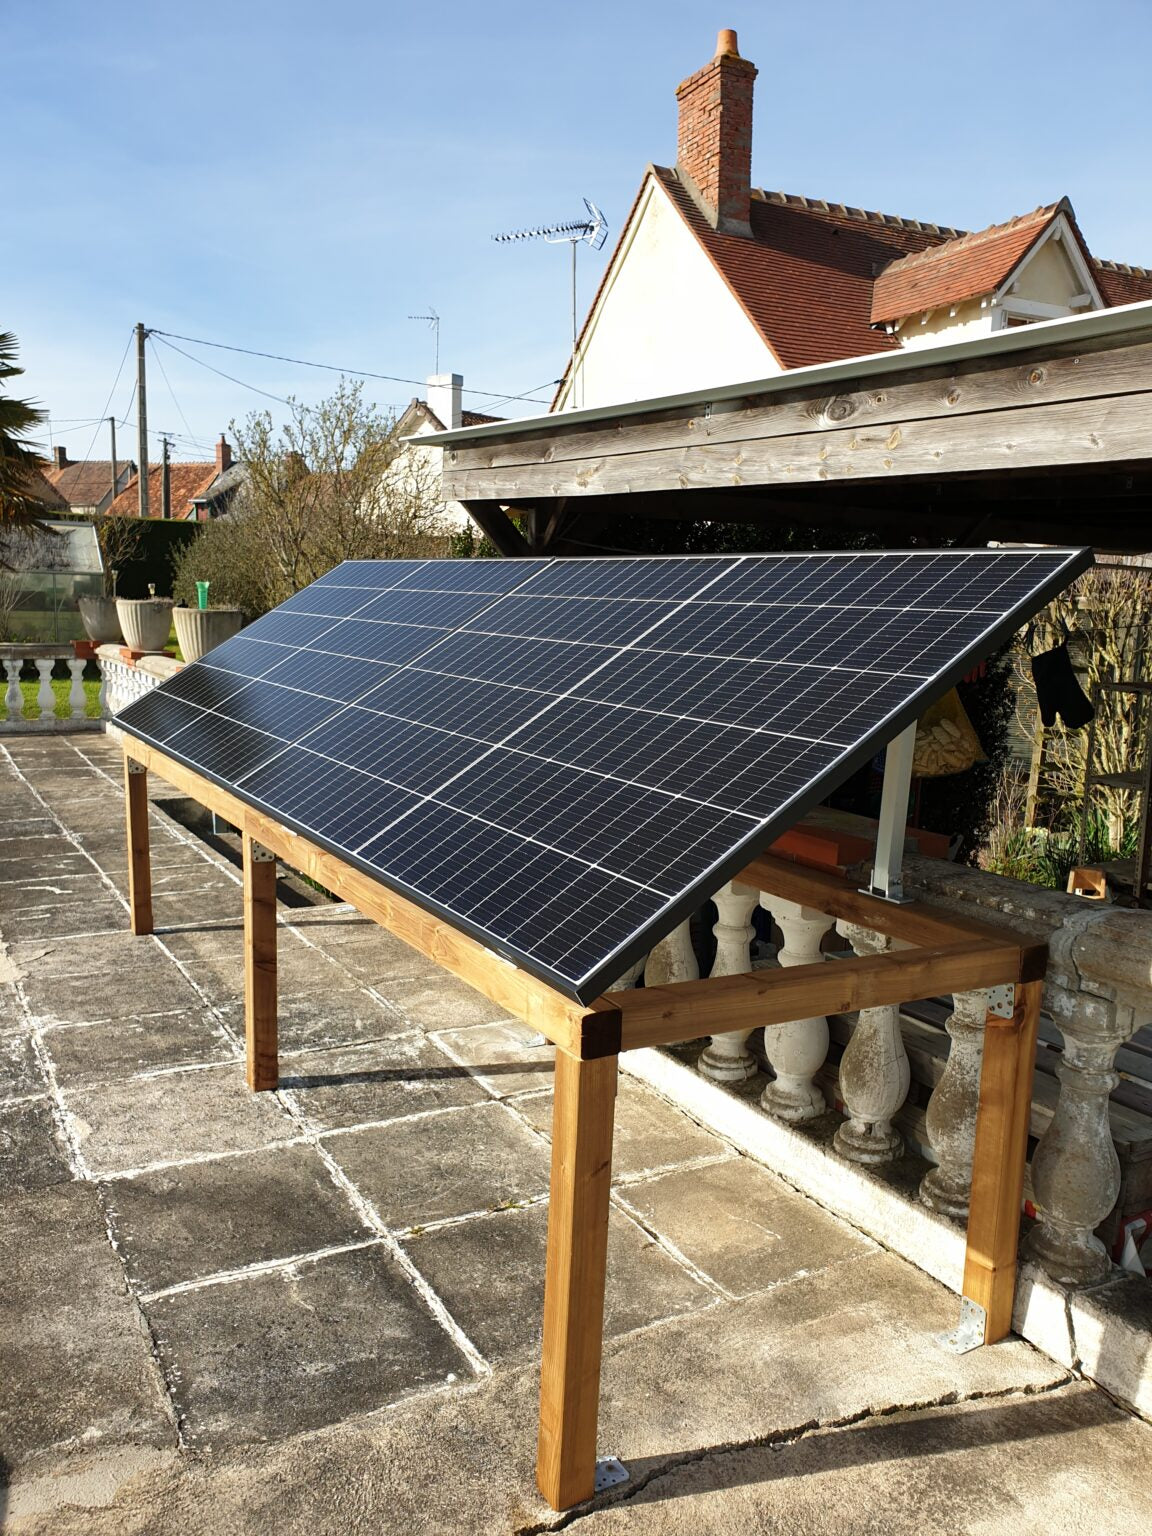 Kit panneau solaire au sol 2000W - Plug and Play